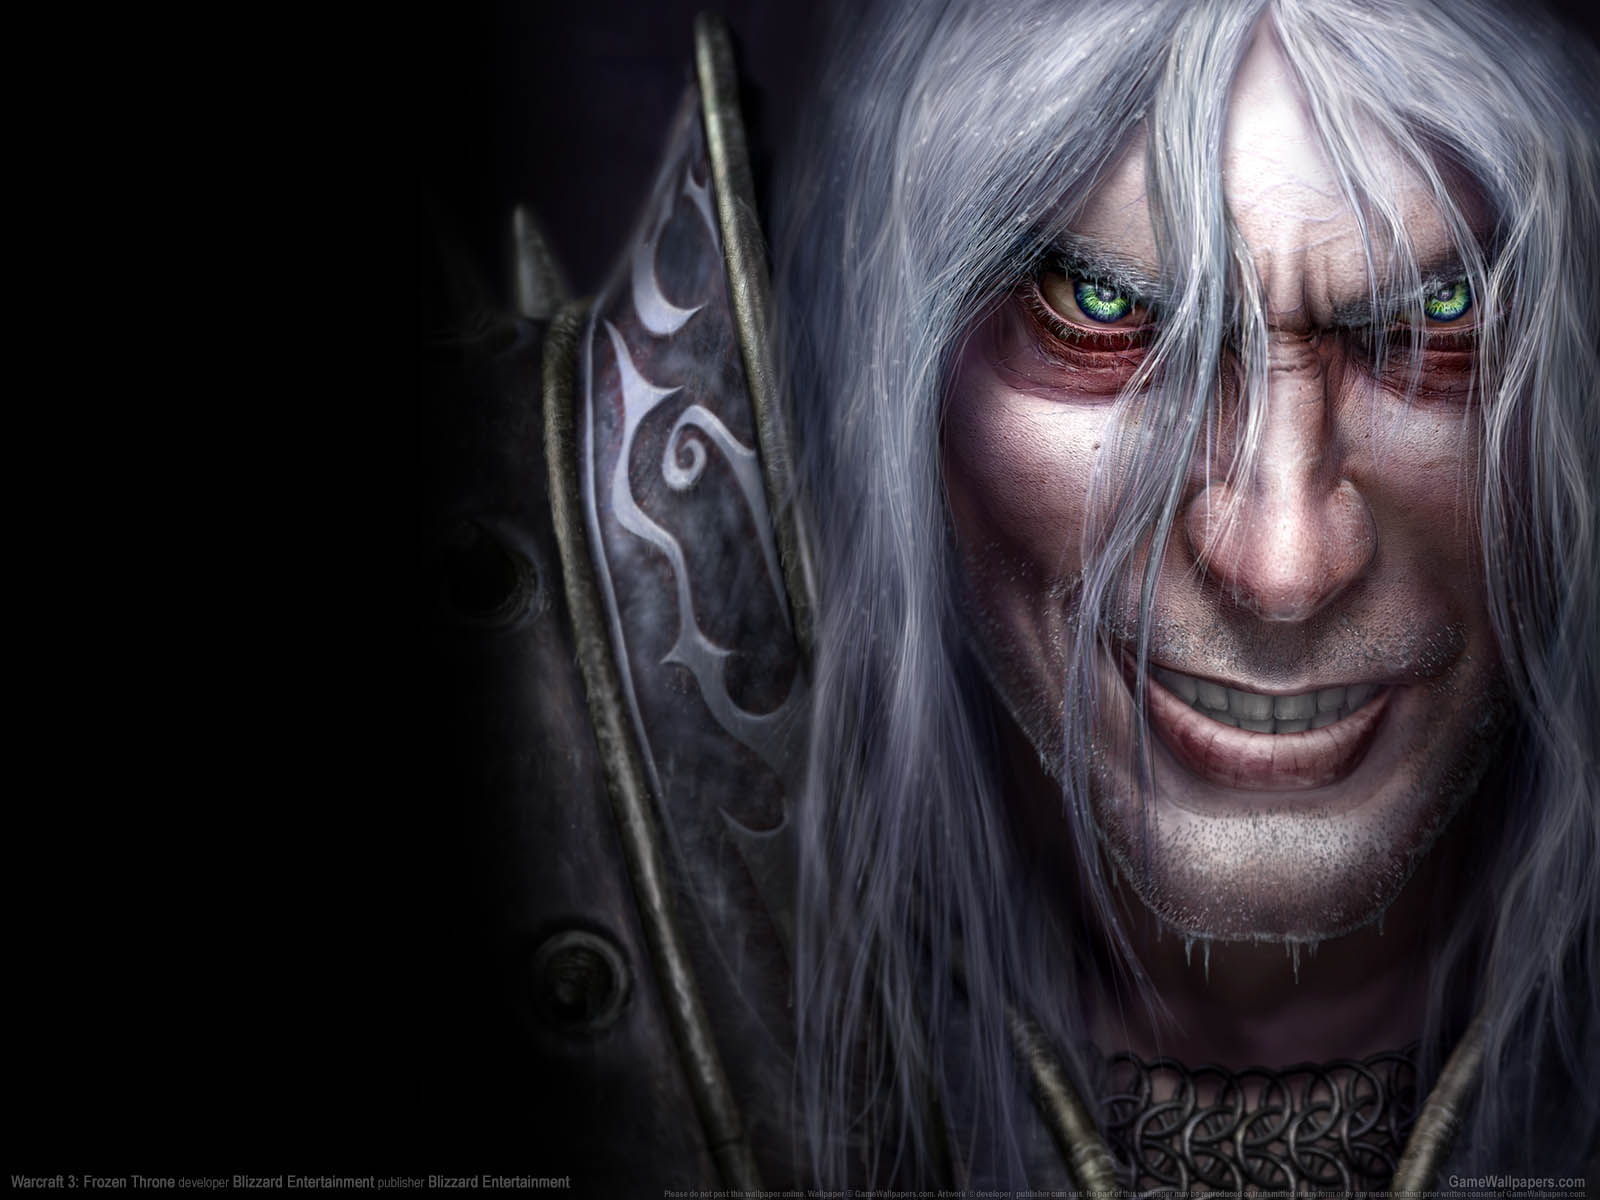 Warcraft 3%3A Frozen Throne fond d'cran 03 1600x1200